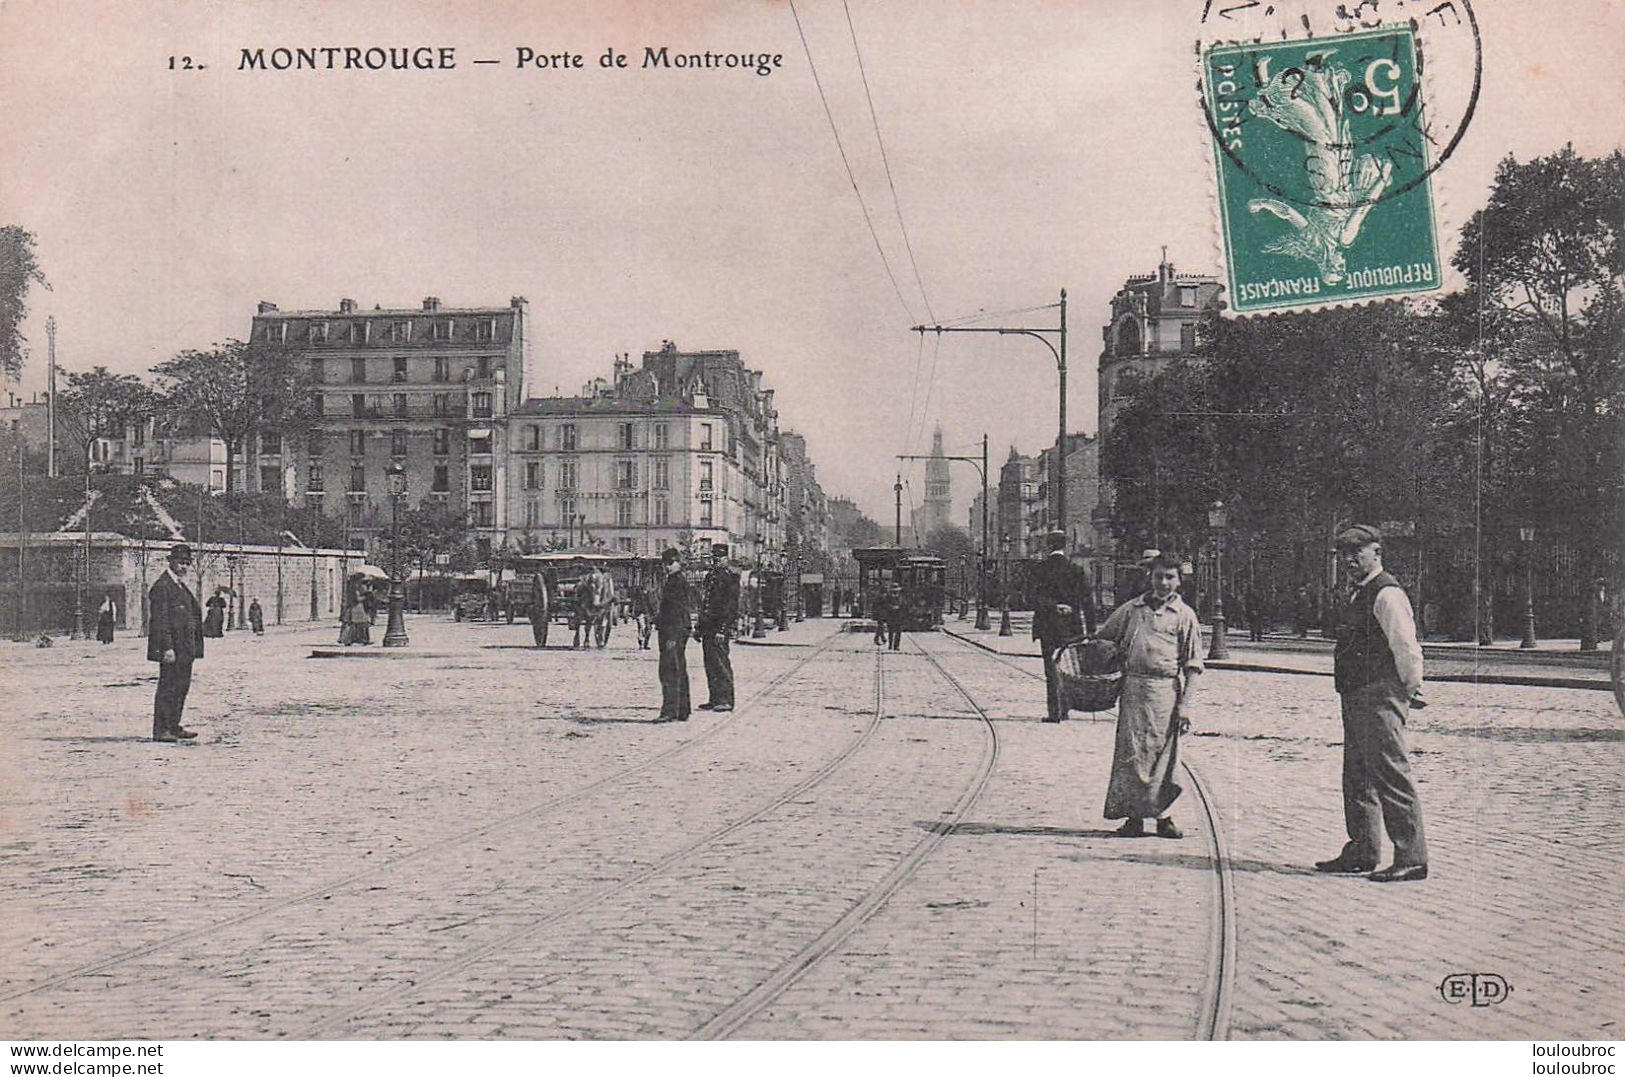 MONTROUGE PORTE DE MONTROUGE - Montrouge